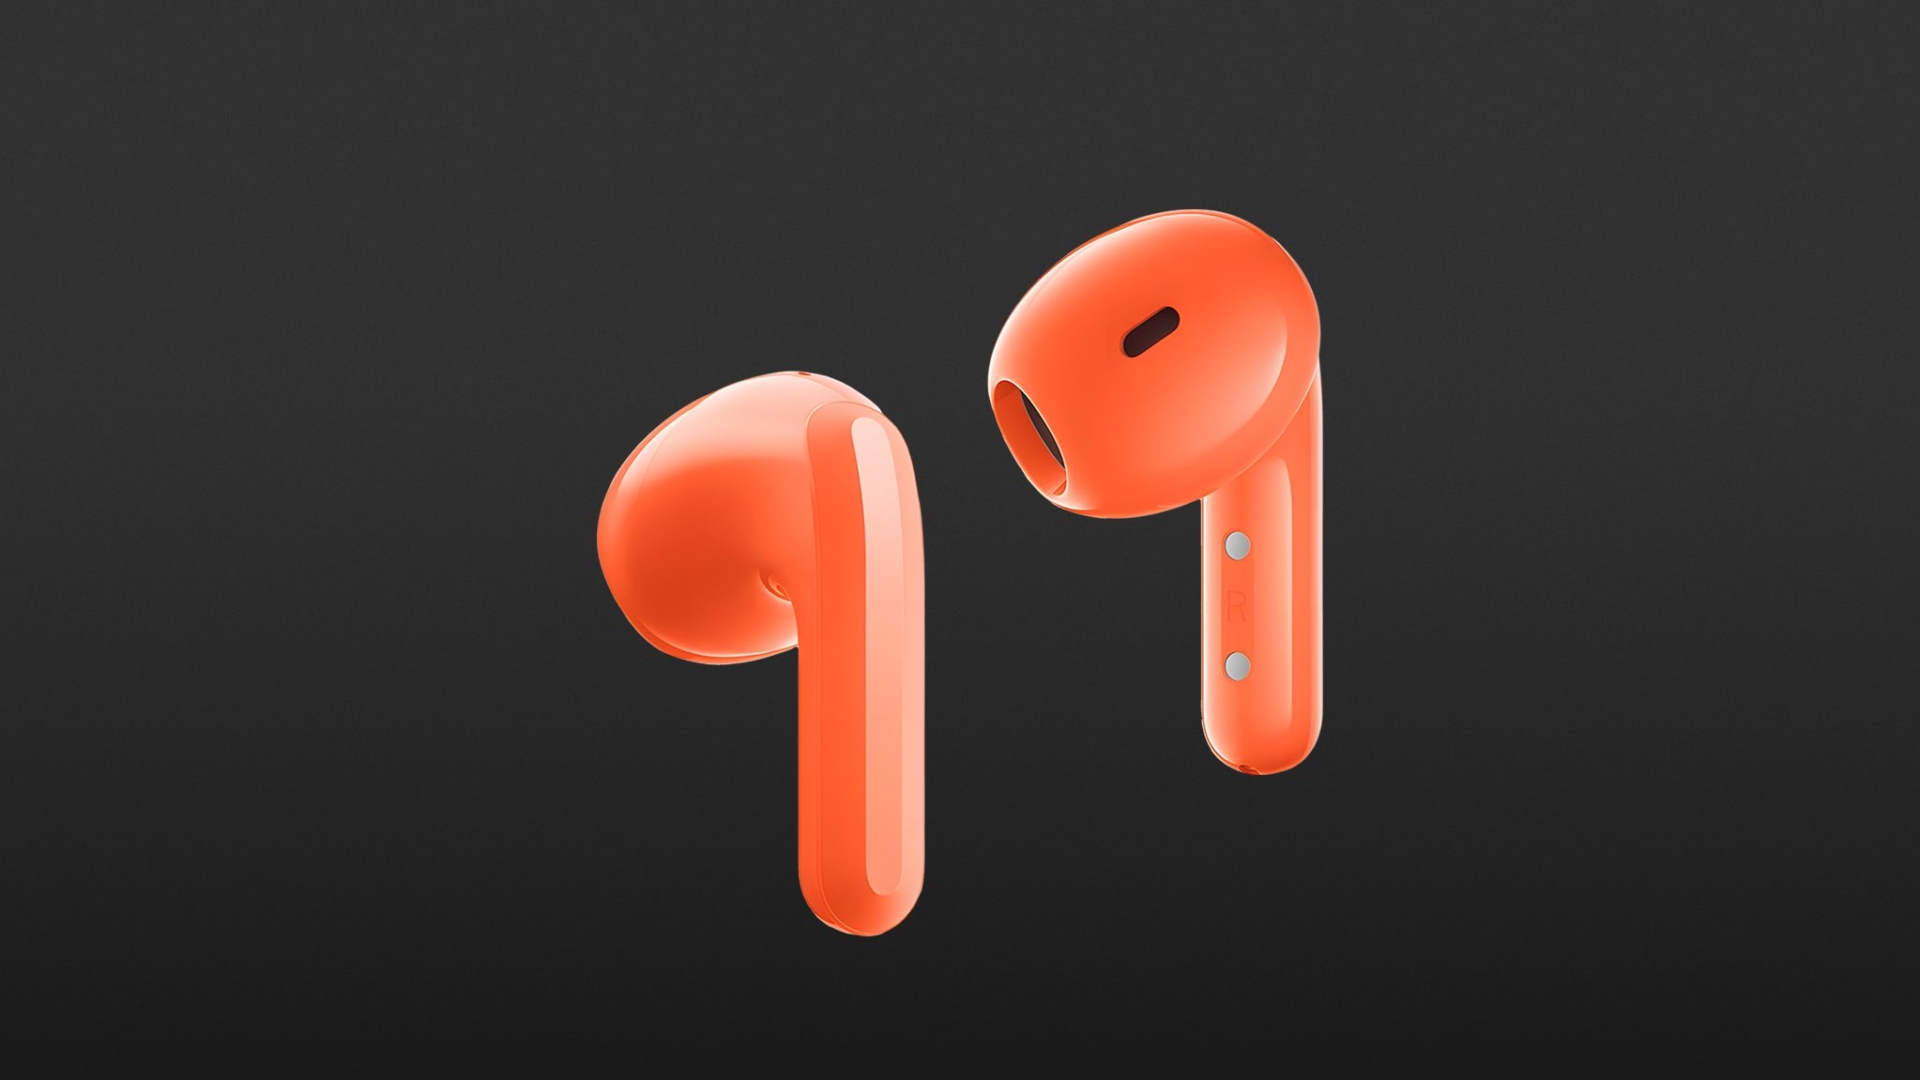 Xiaomi Buds 4 Pro headphones review